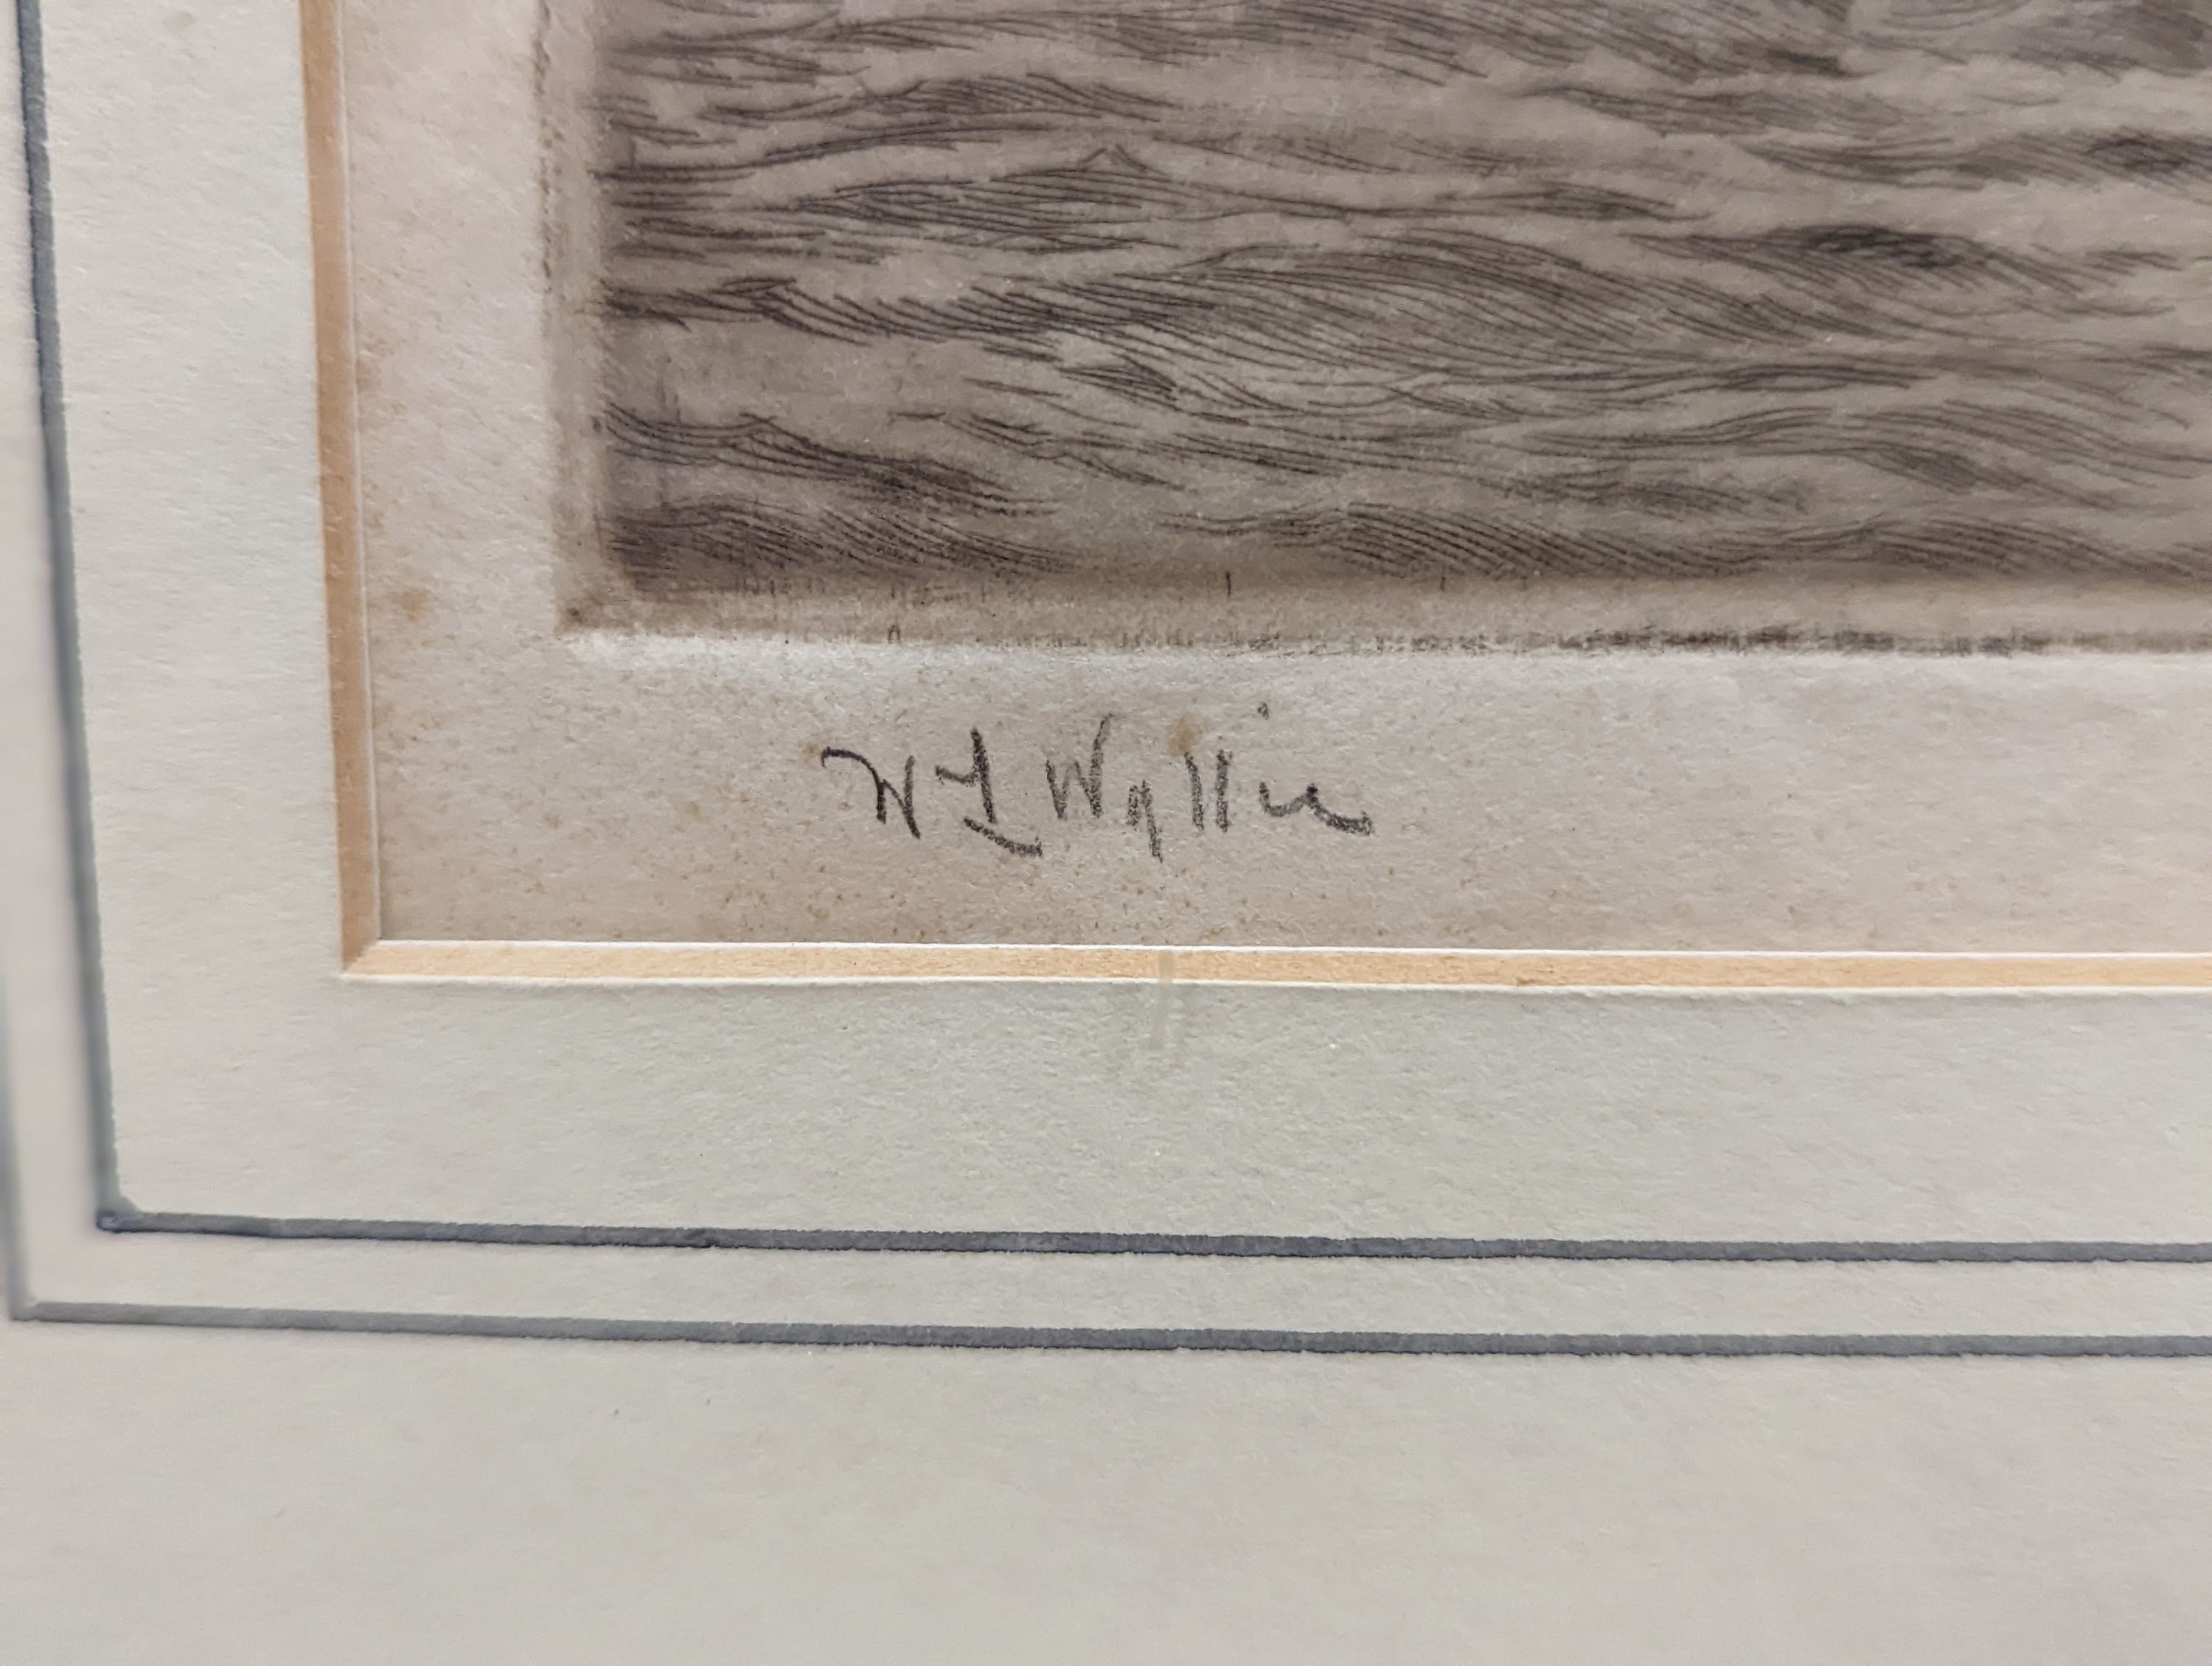 William Lionel Wyllie (1851-1931), etching, HMS Warspite and HMS Warrior at Jutland, signed in pencil, 21 x 42cm